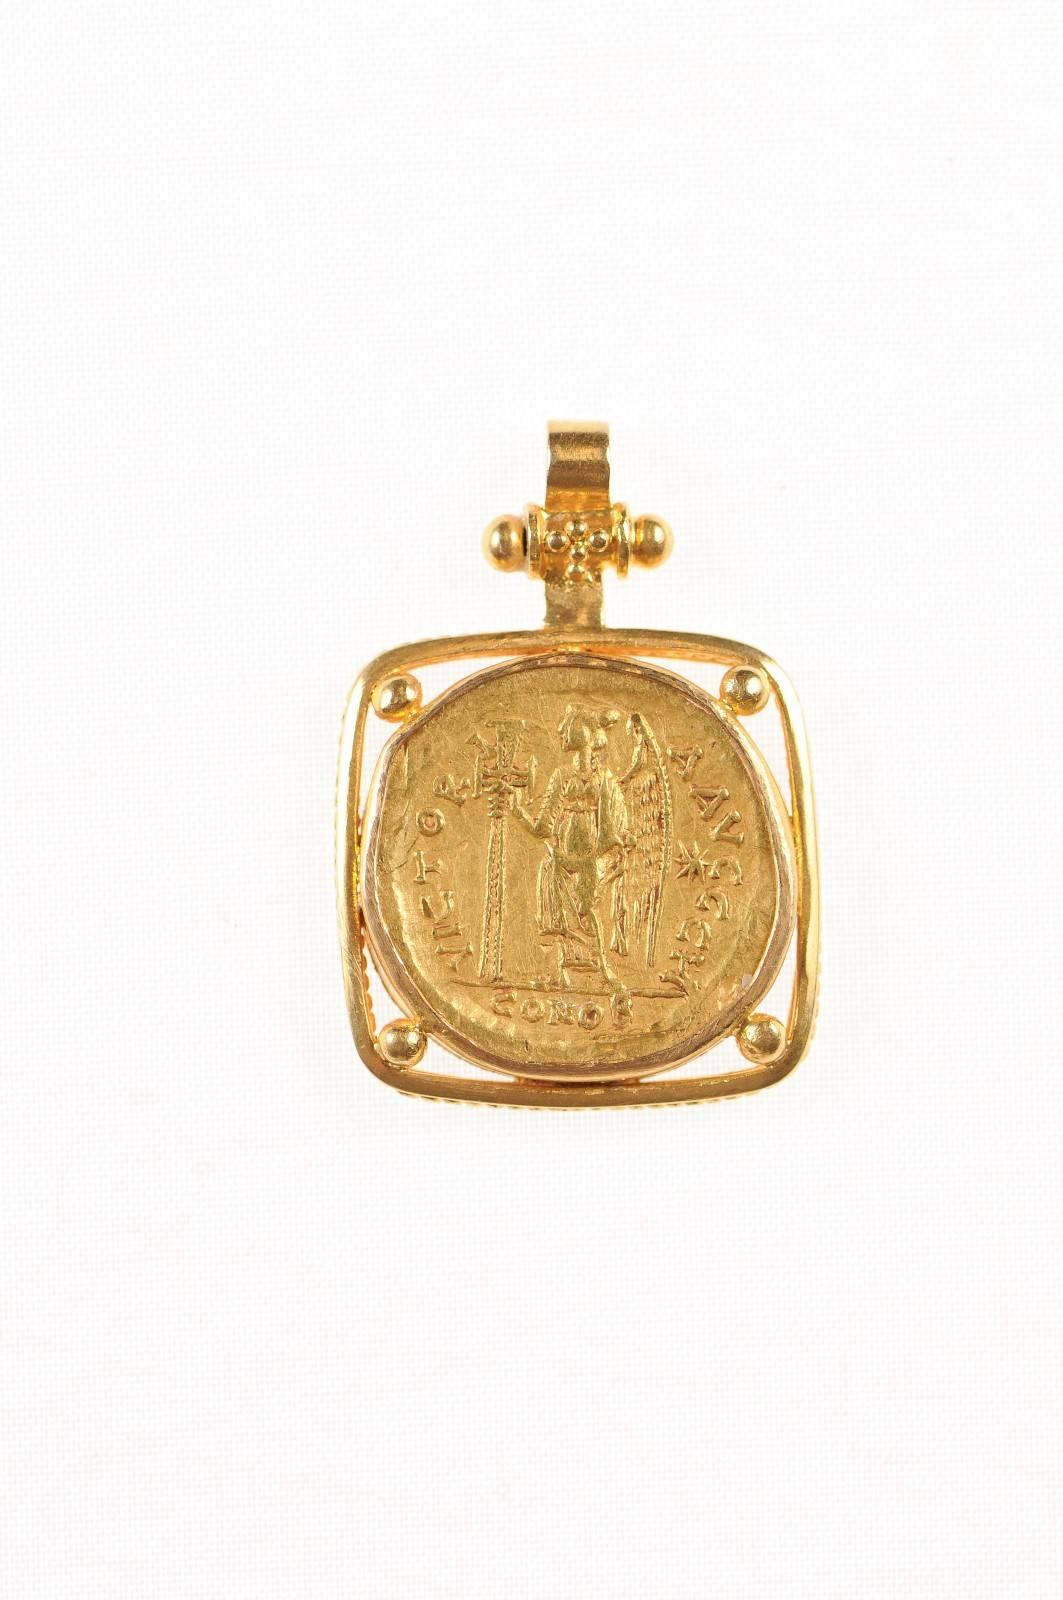 Authentique pièce impériale romaine en or Solidus de Zeno, deuxième règne, AV (Monnaie de Constantinople, vers 476-491 ADS), sertie dans un chaton carré en or de 22 carats avec une anse en or de 22 carats. L'avers de cette pièce présente le buste